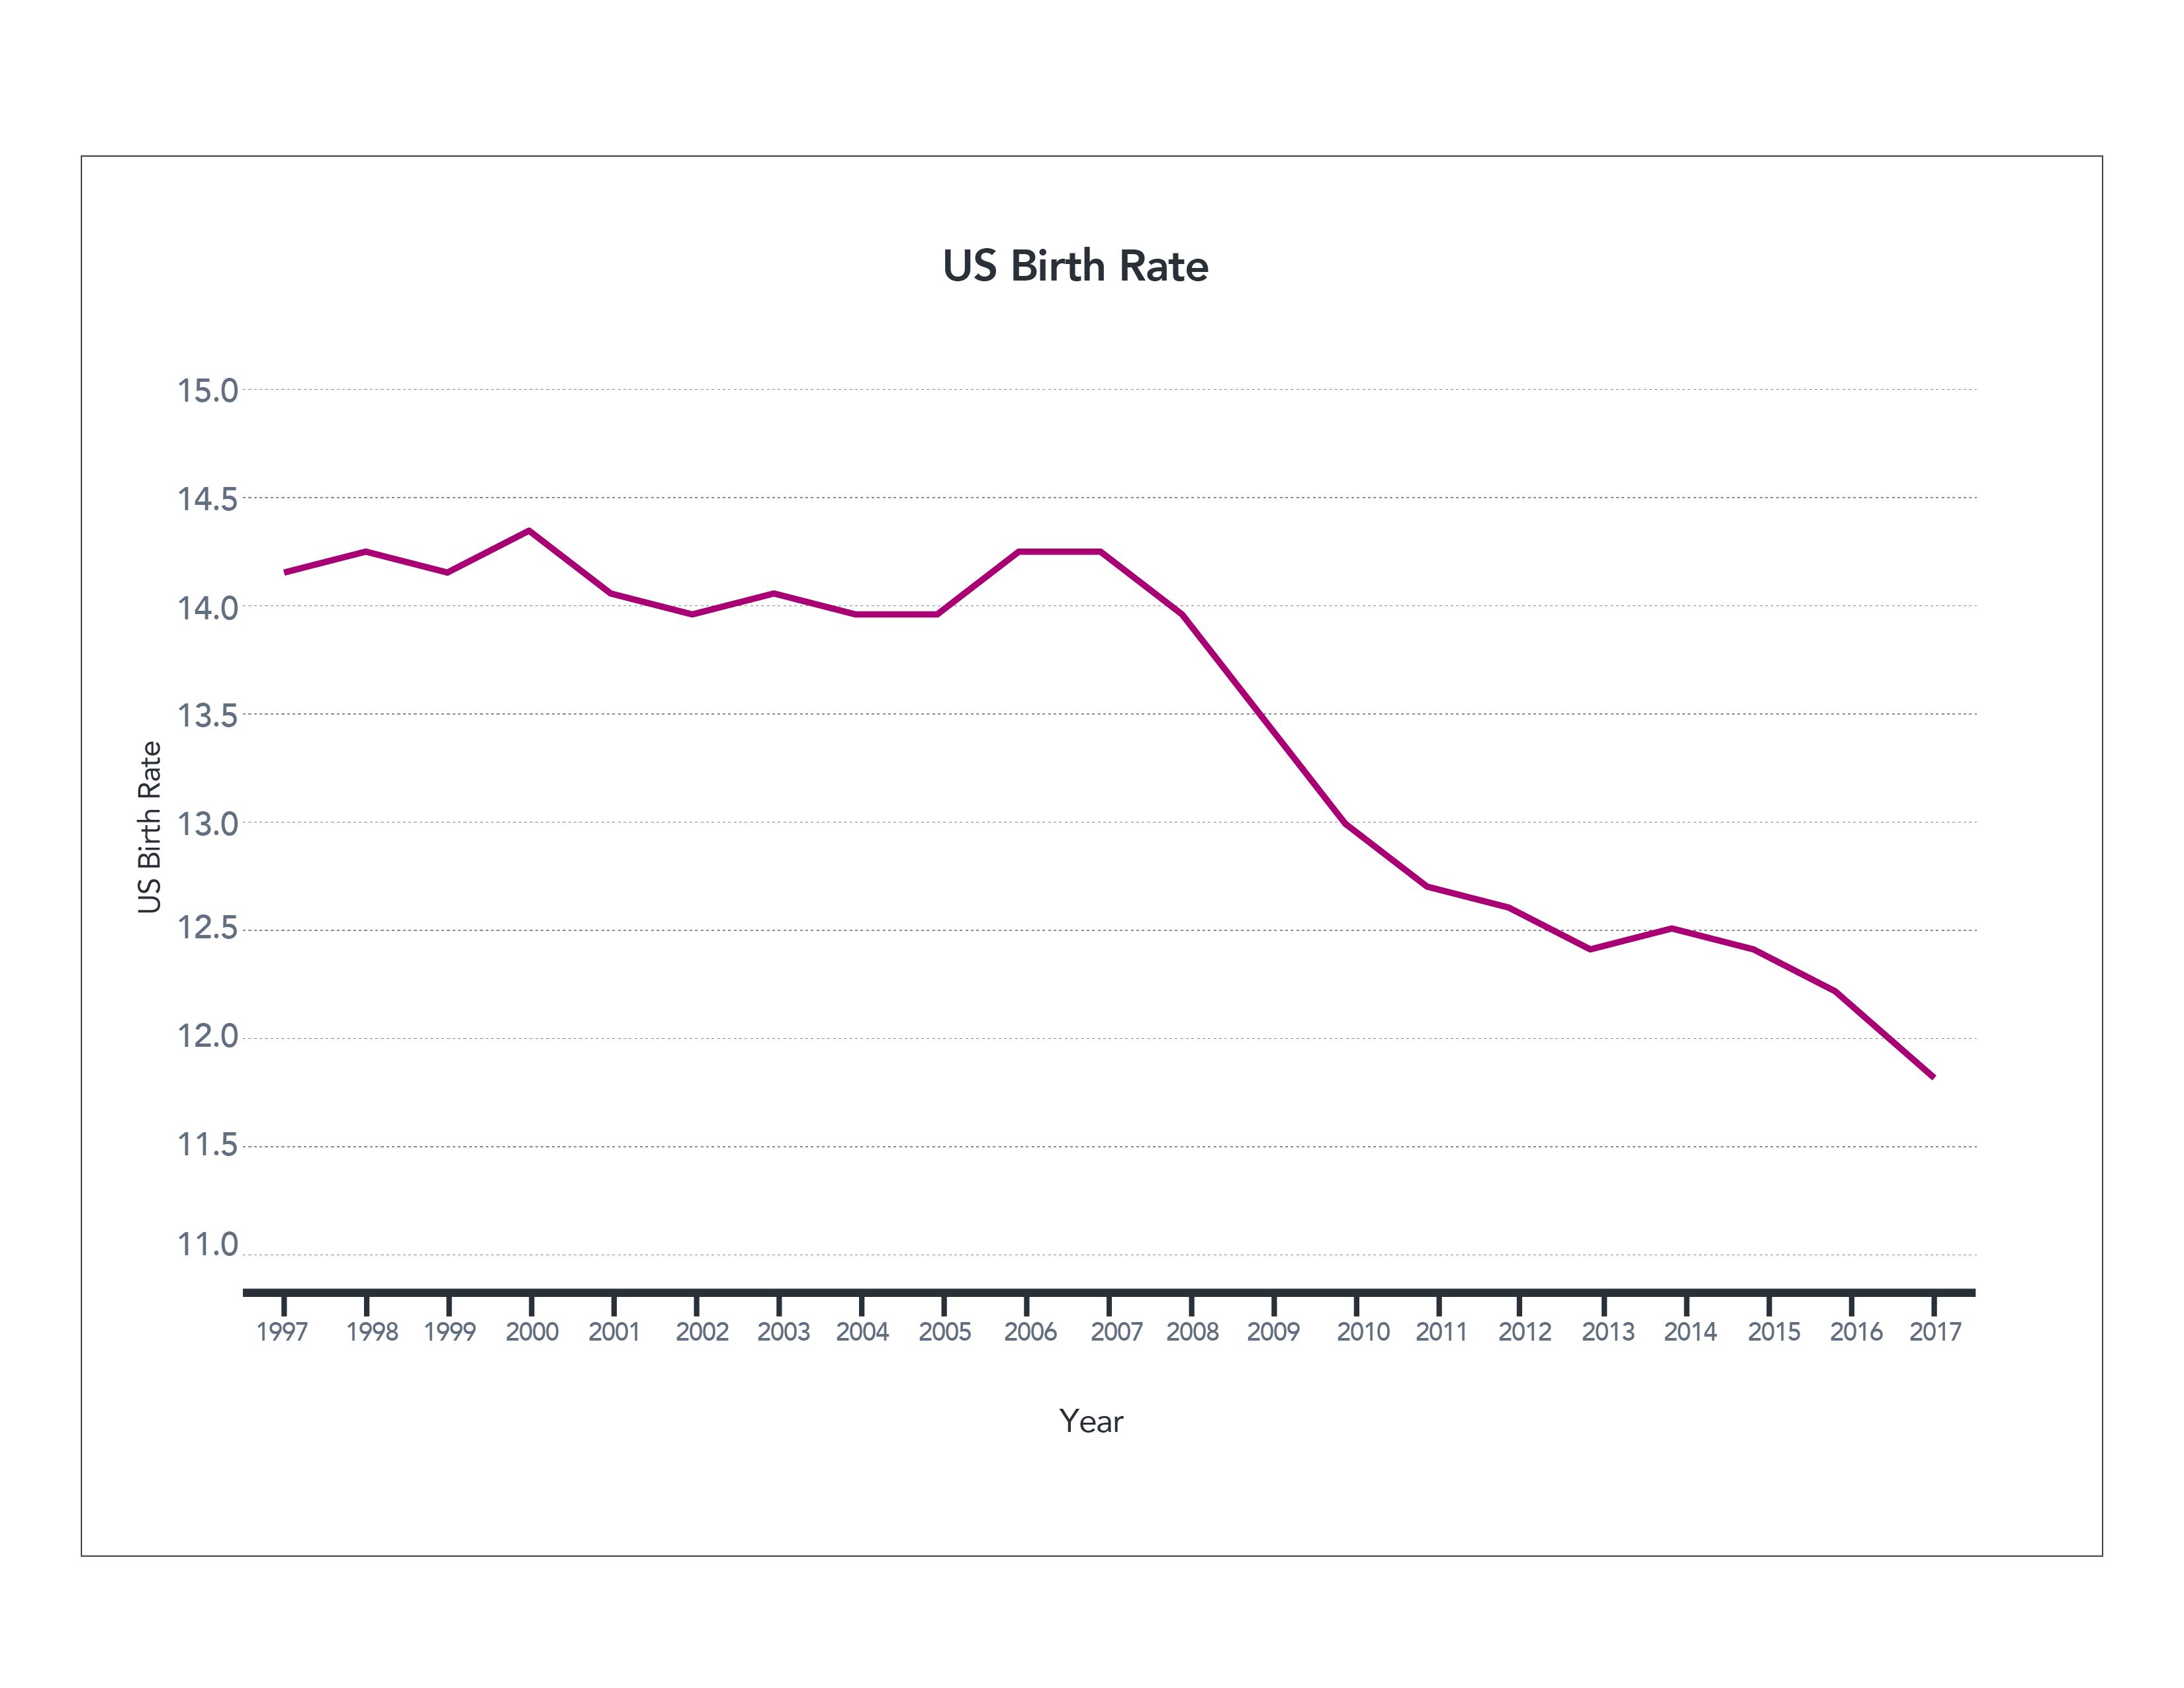 Figure 5. US Birth Rate (1997-2017)